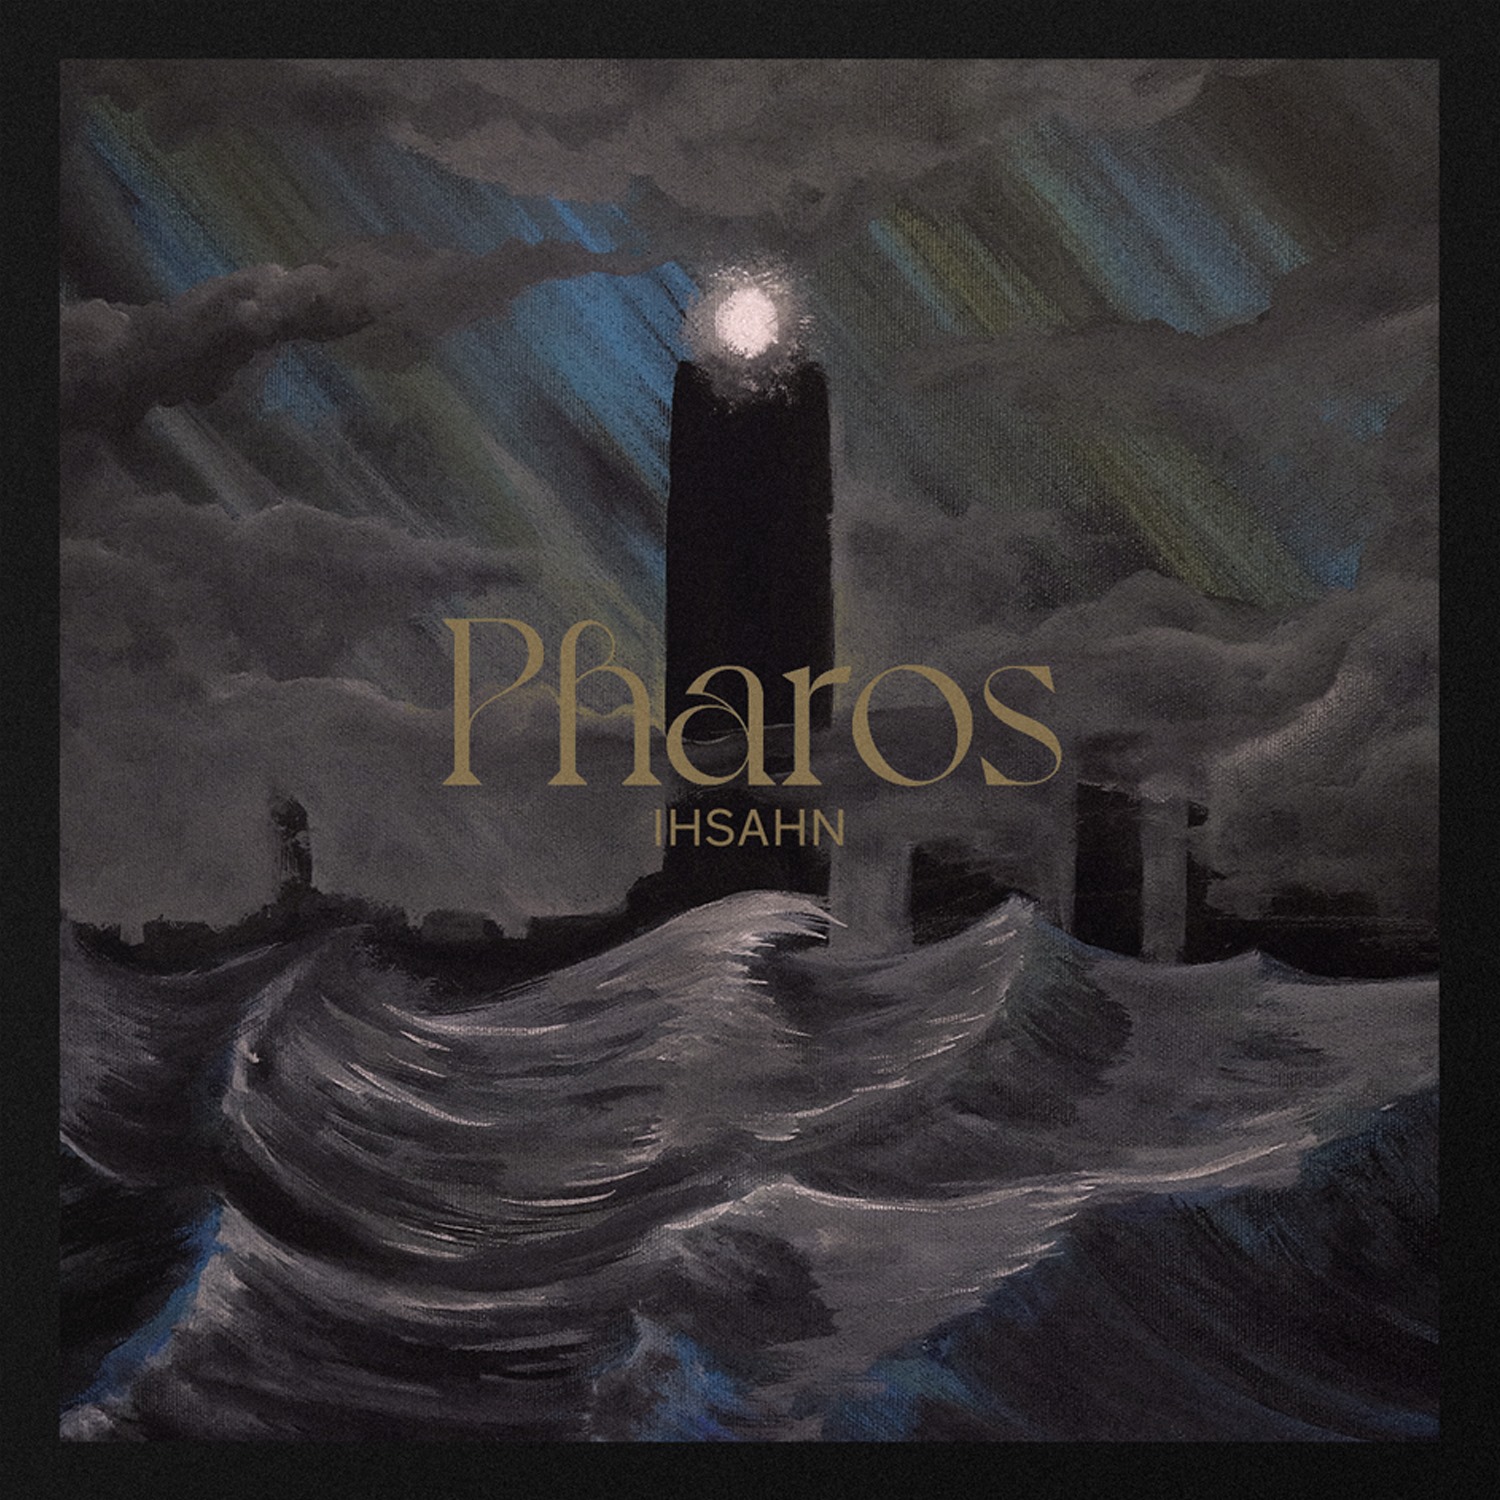 IHSAHN (Emperor) regresa con nuevo EP “Pharos”